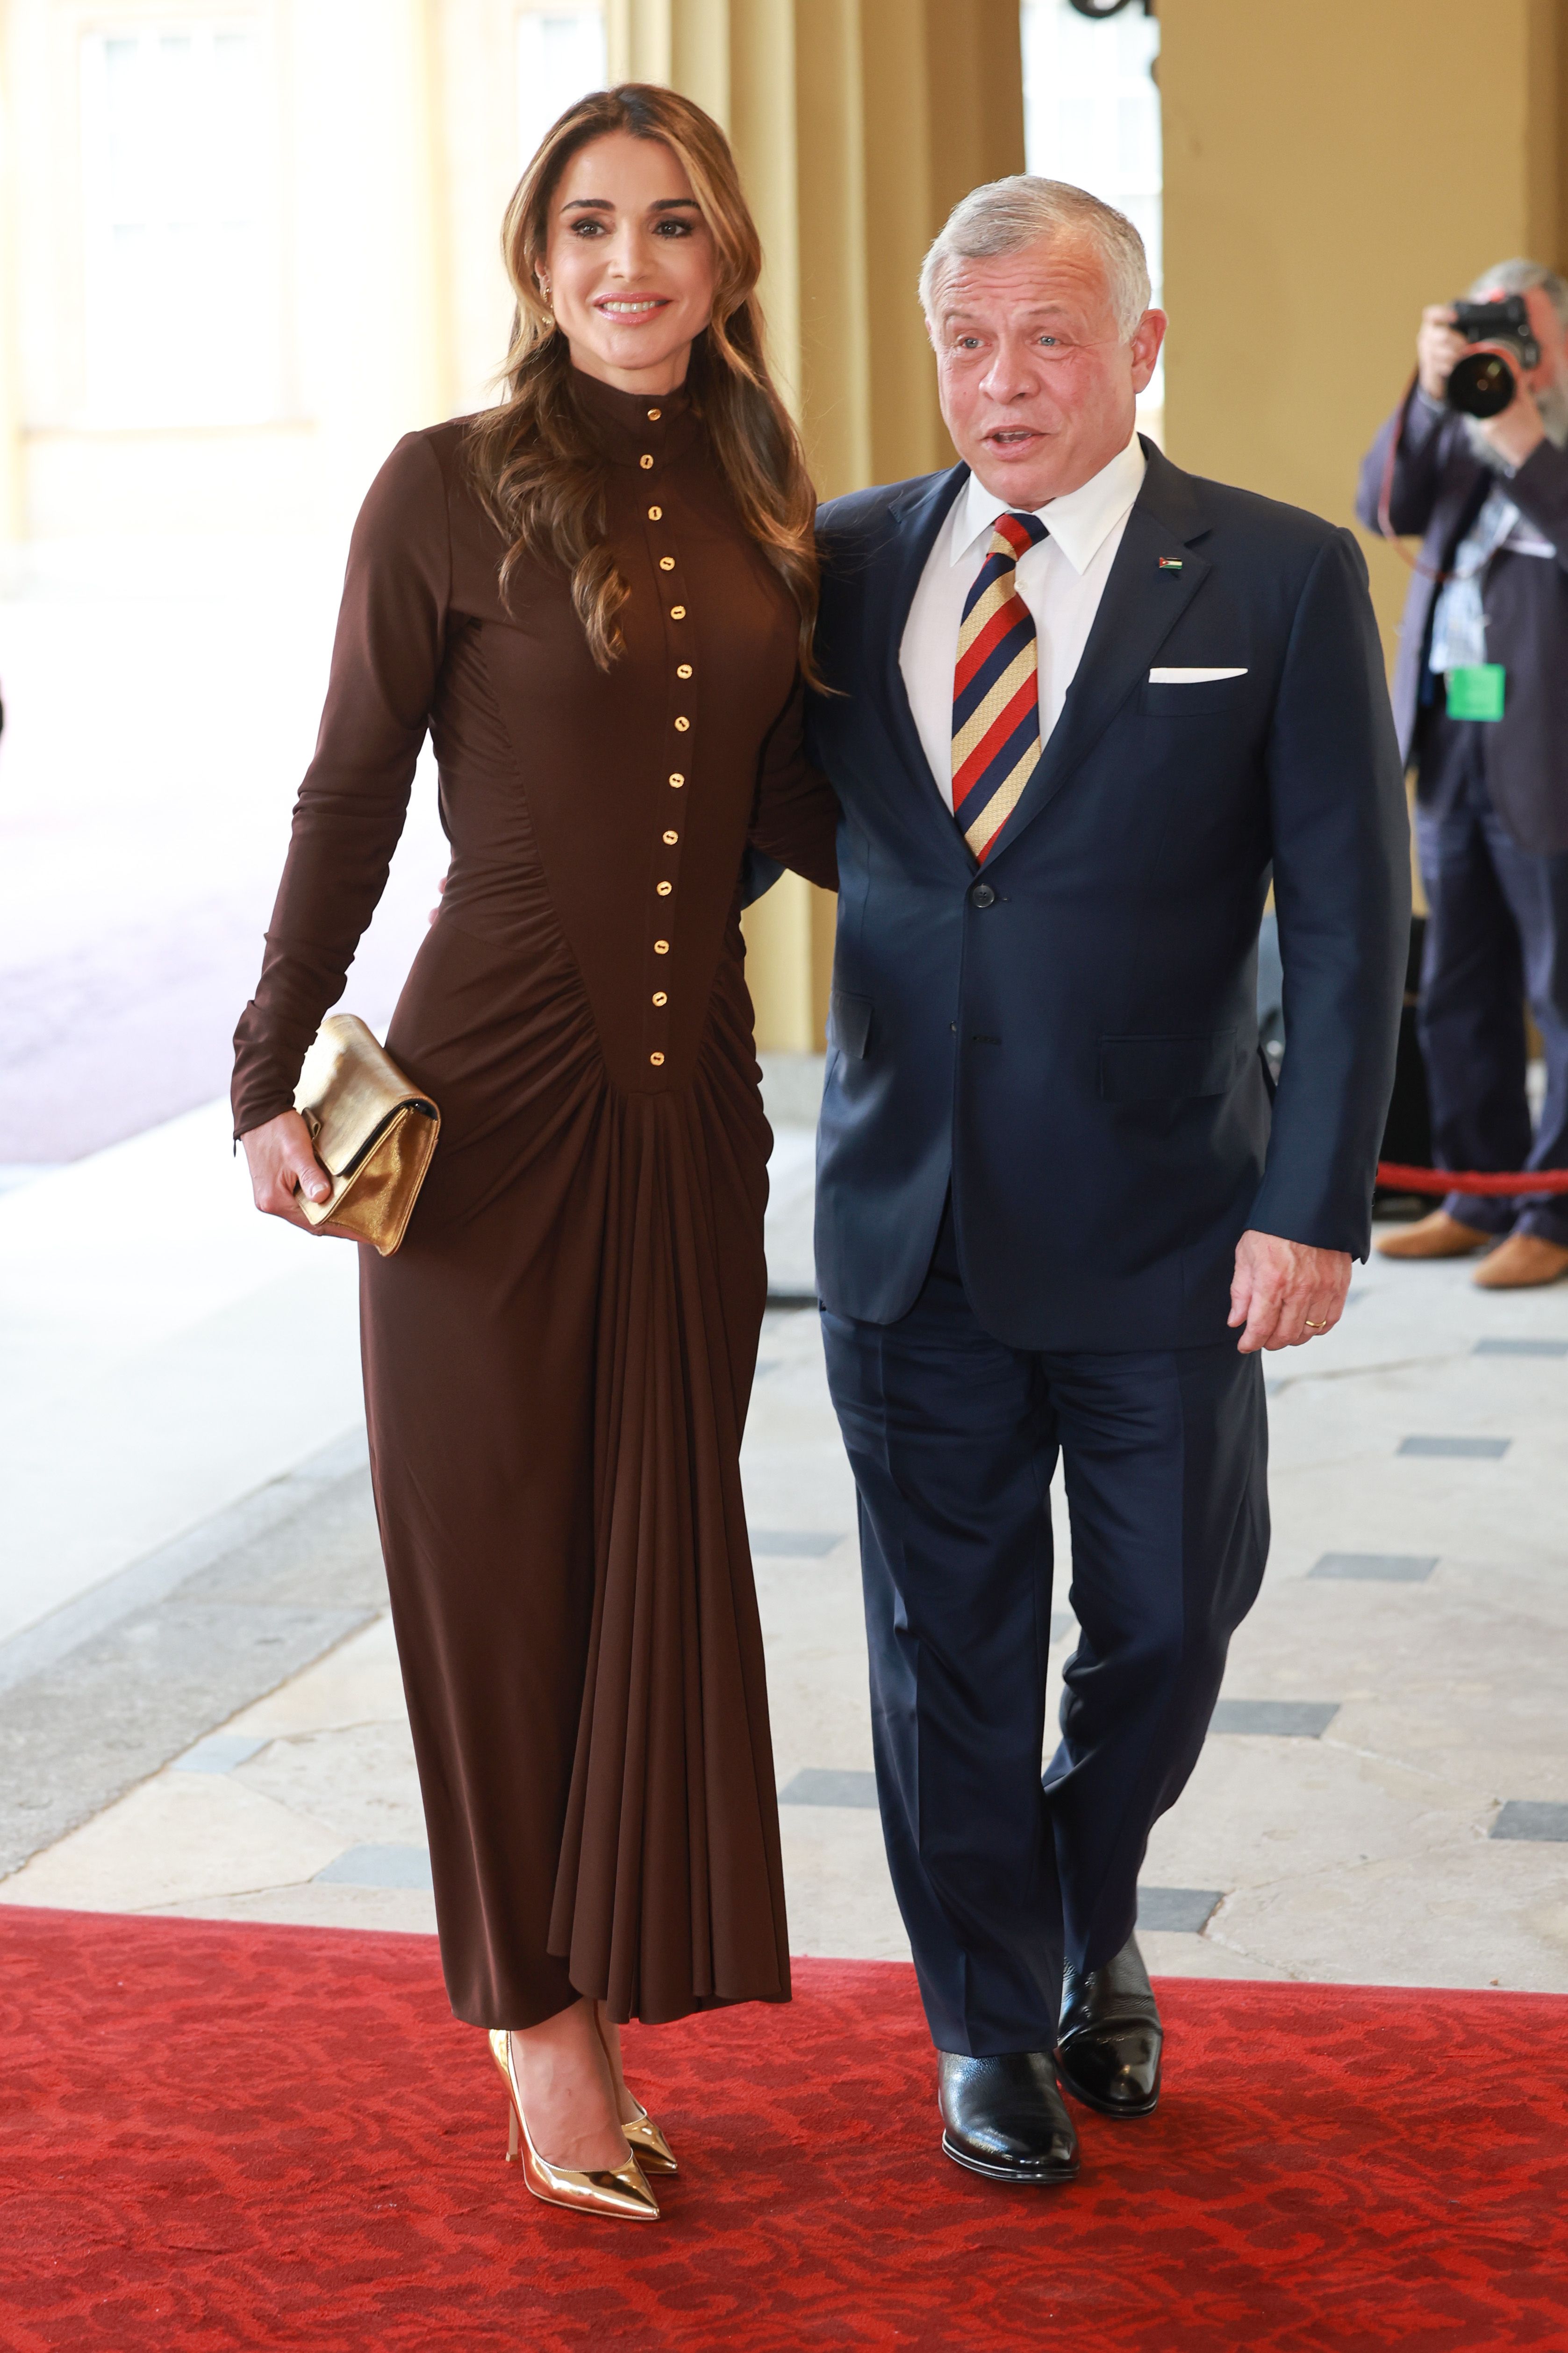 Queen Rania's Red Louis Vuitton Bag